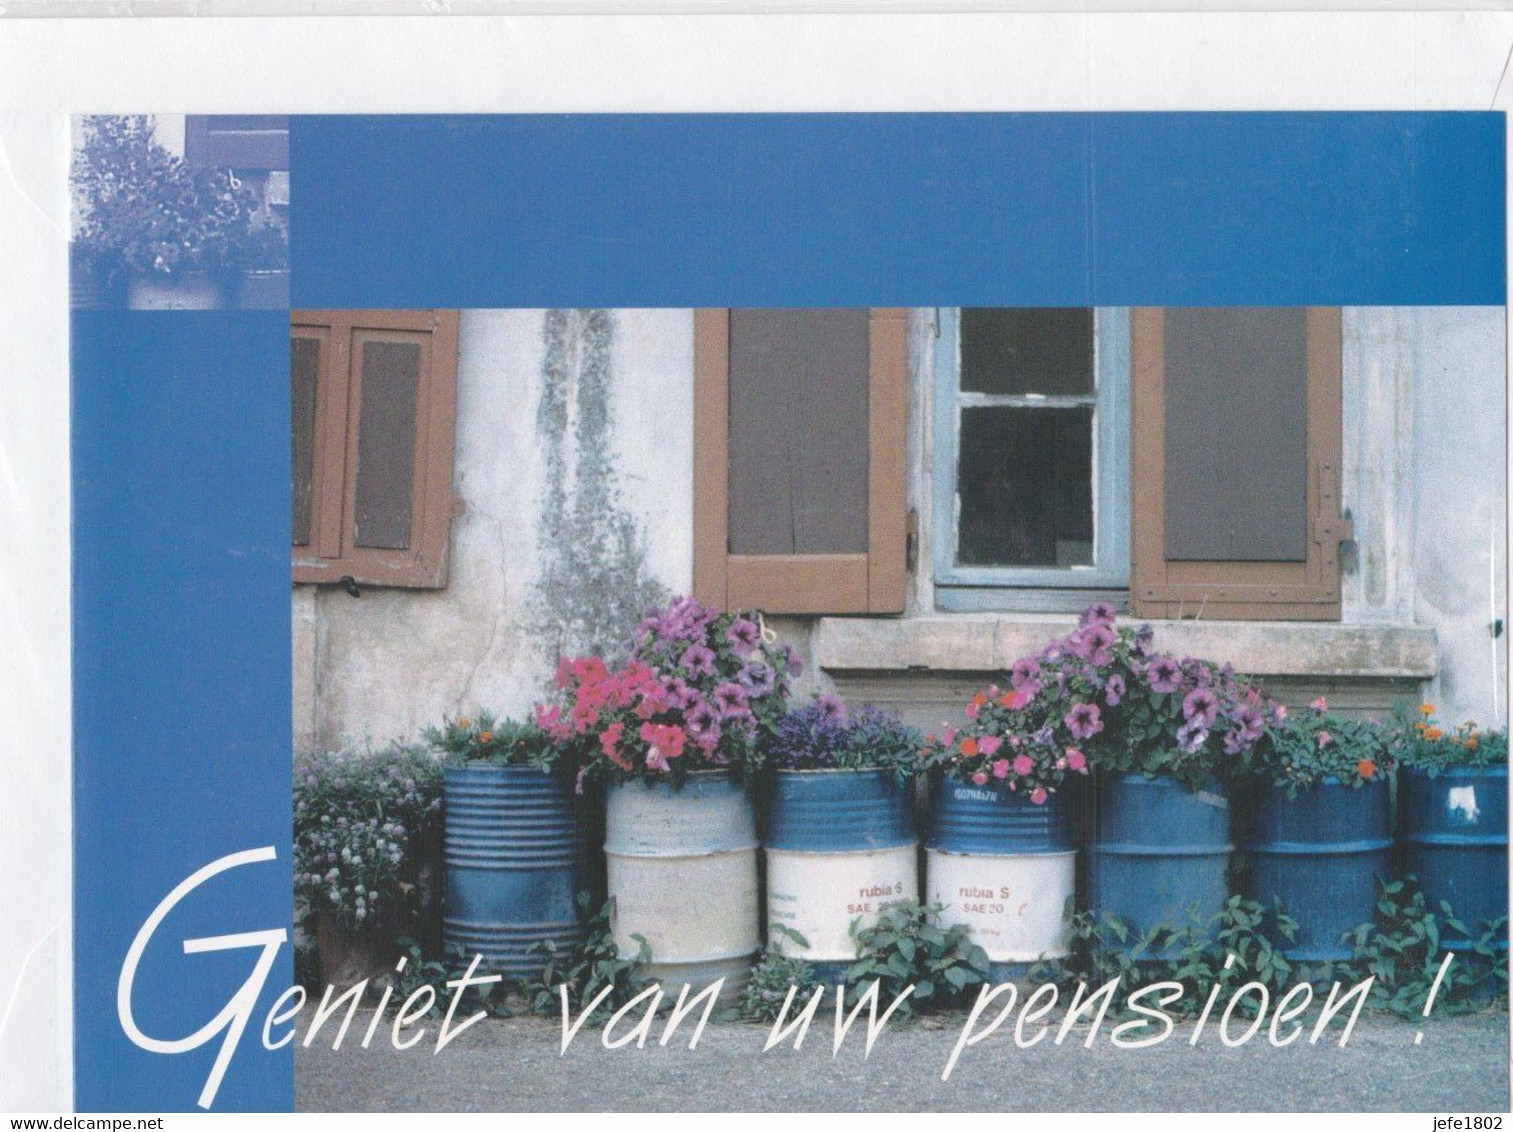 Postogram 161 N  / 99 - Geniet Van Uw Pensioen ! Pensioned - Postogram